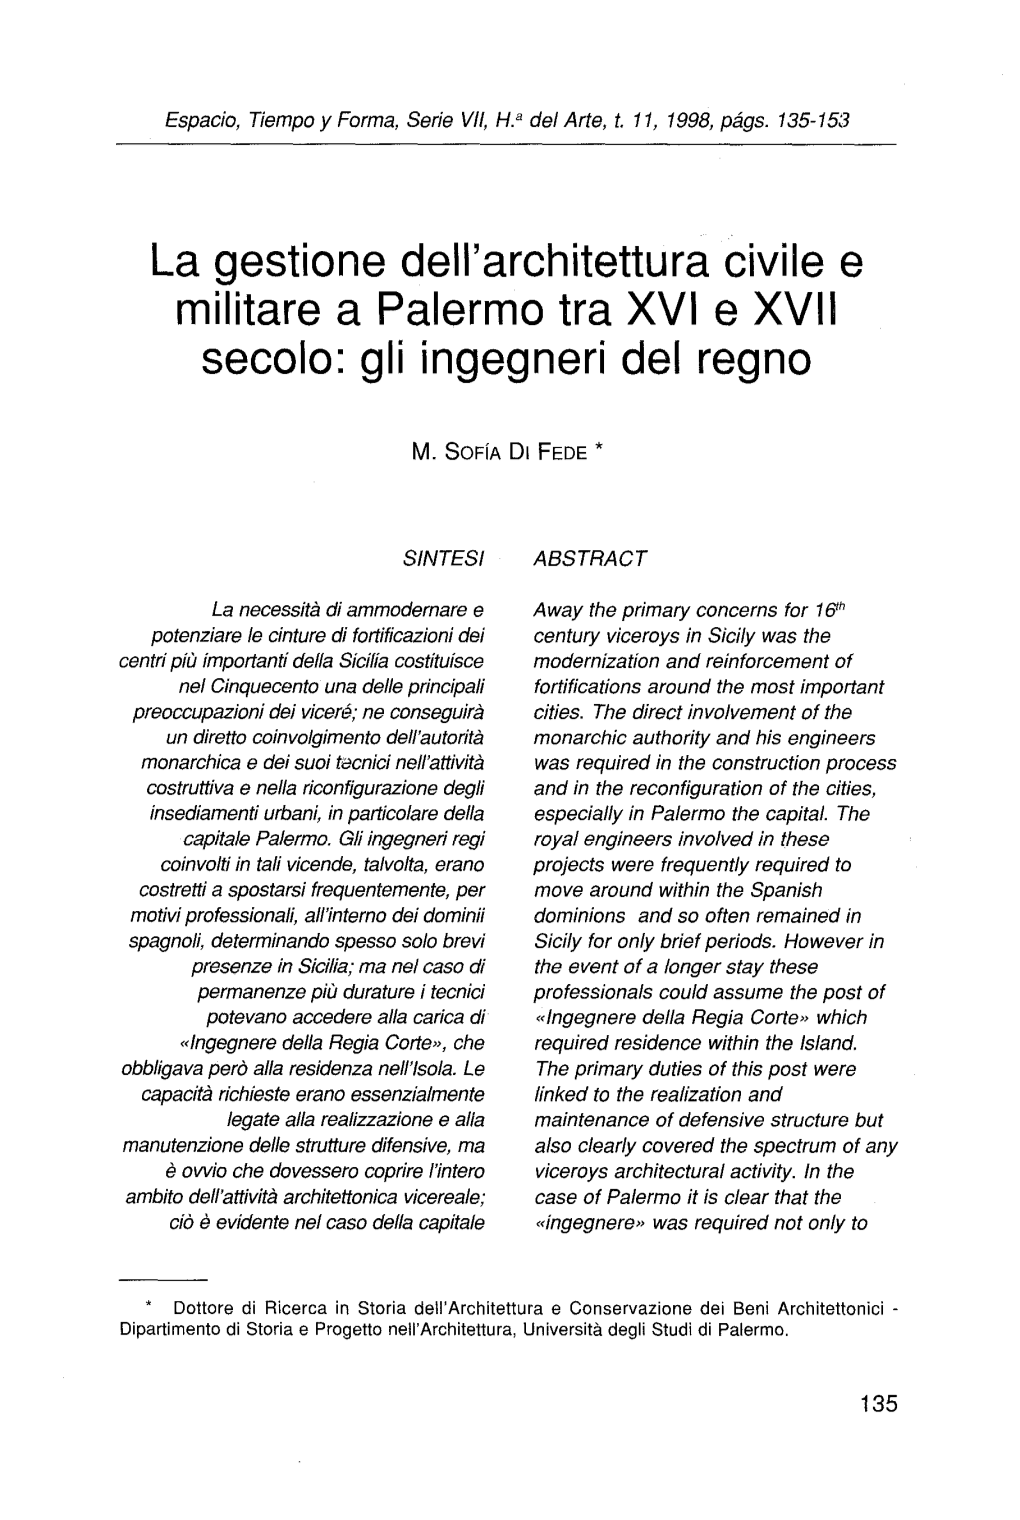 La Gestione Dell'architettura Civile E Militare a Palermo Tra XVI E XVII Secólo: Gli Ingegneri Del Regno